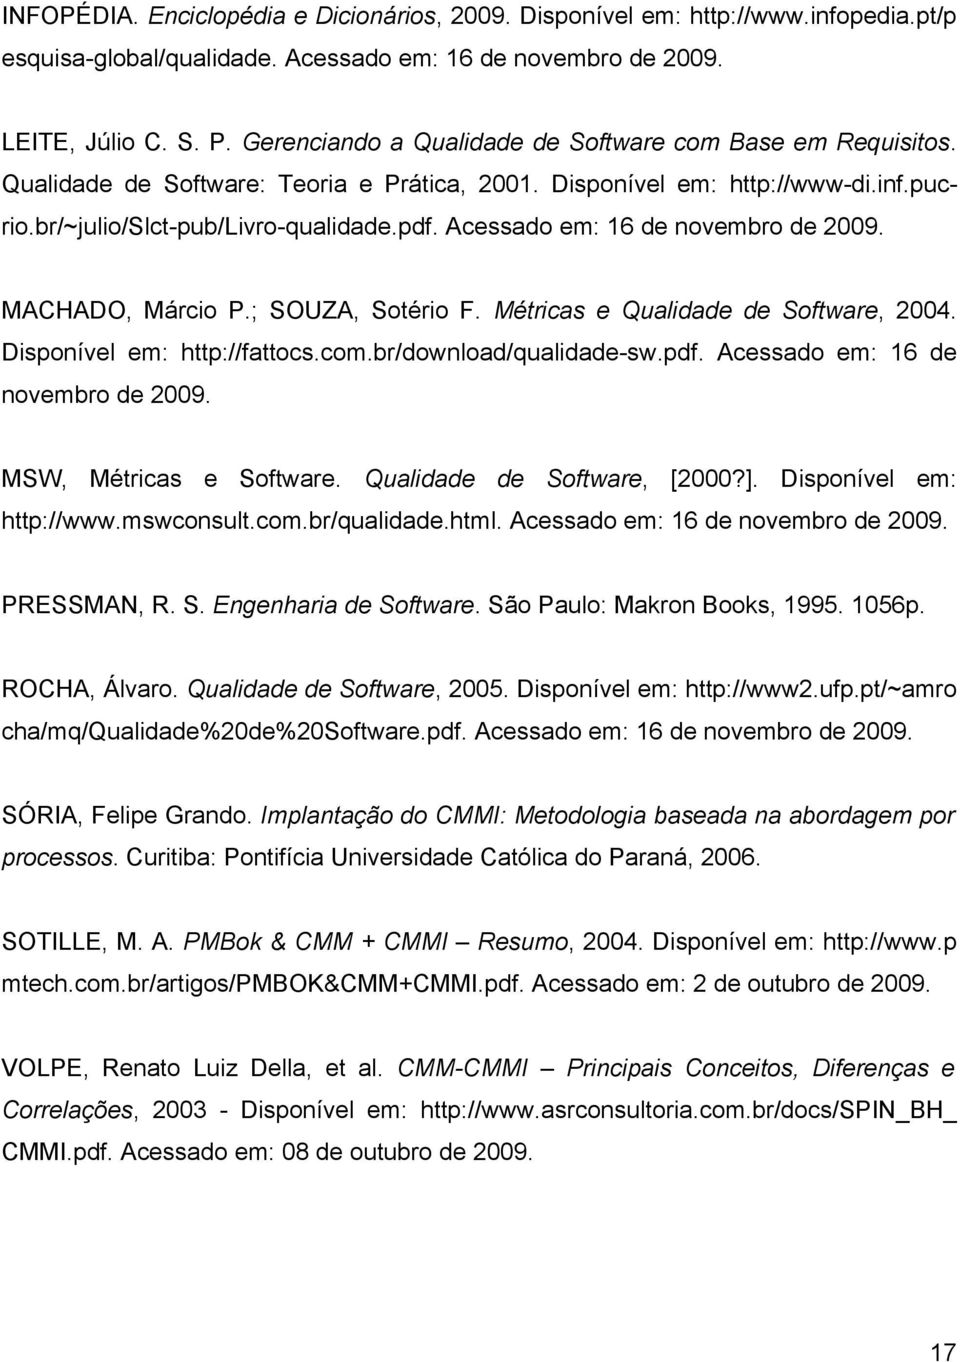 Acessado em: 16 de novembro de 2009. MACHADO, Márcio P.; SOUZA, Sotério F. Métricas e Qualidade de Software, 2004. Disponível em: http://fattocs.com.br/download/qualidade-sw.pdf.